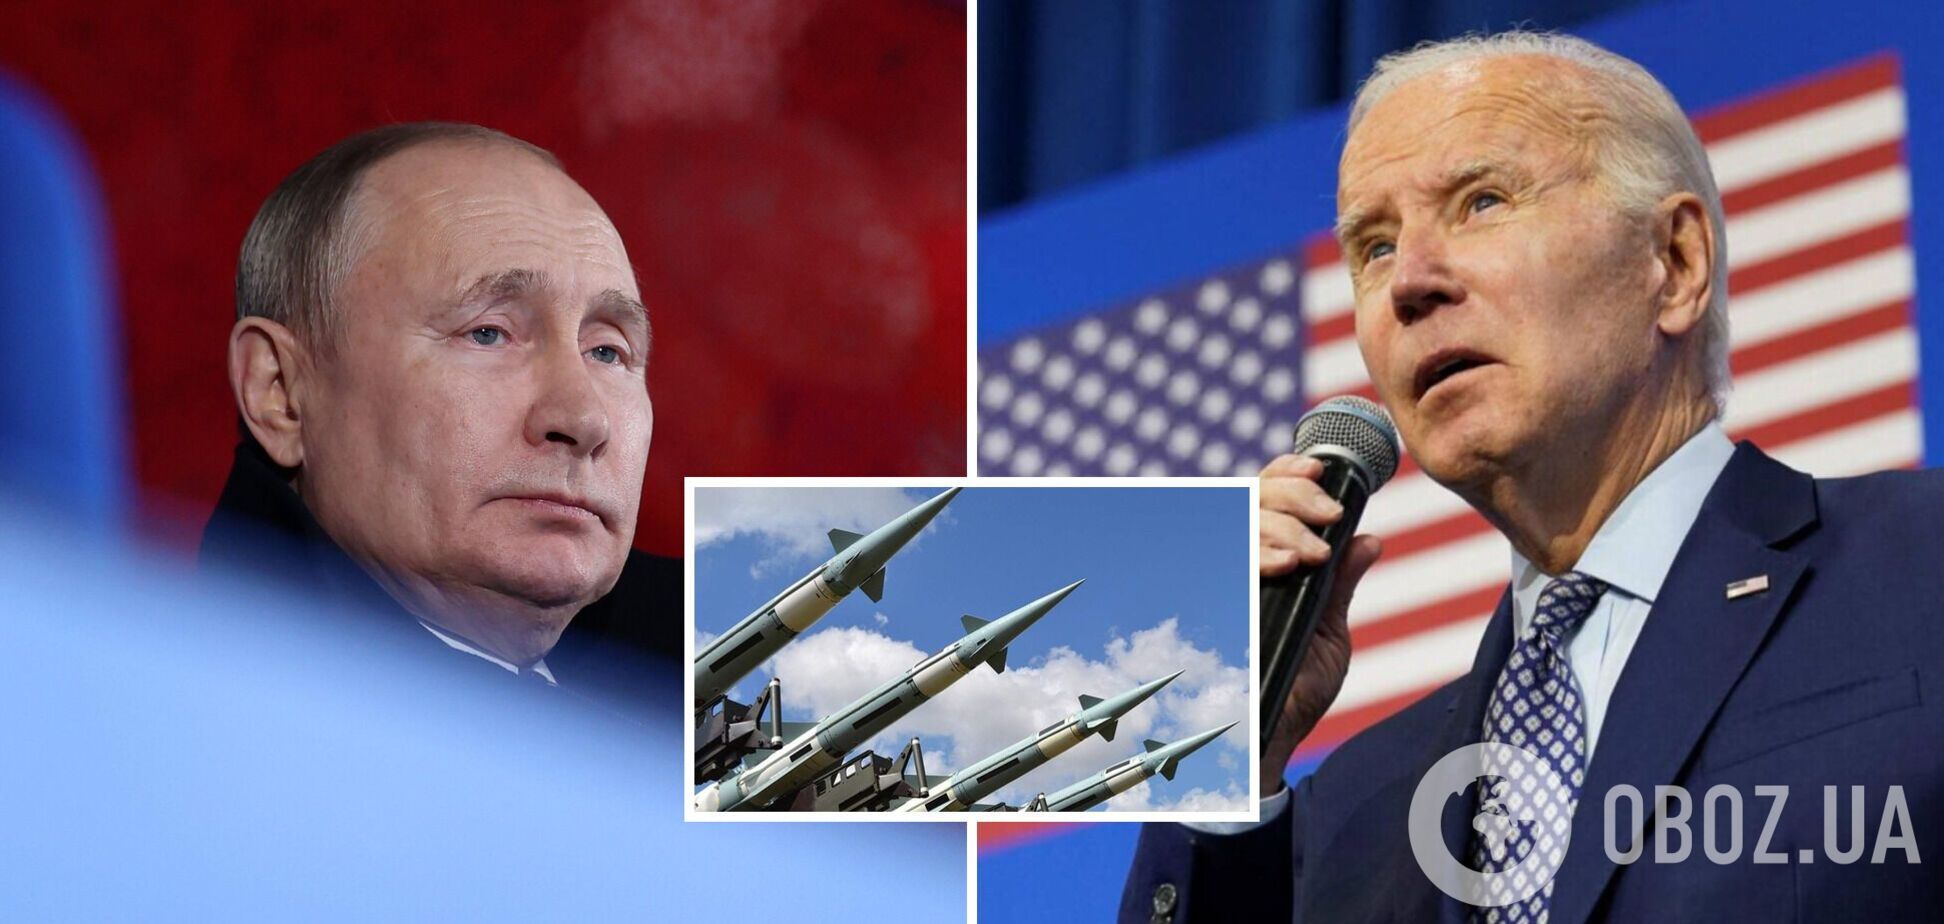 Байден: Путин не готов применить ядерное оружие после приостановки участия в ДСНВ